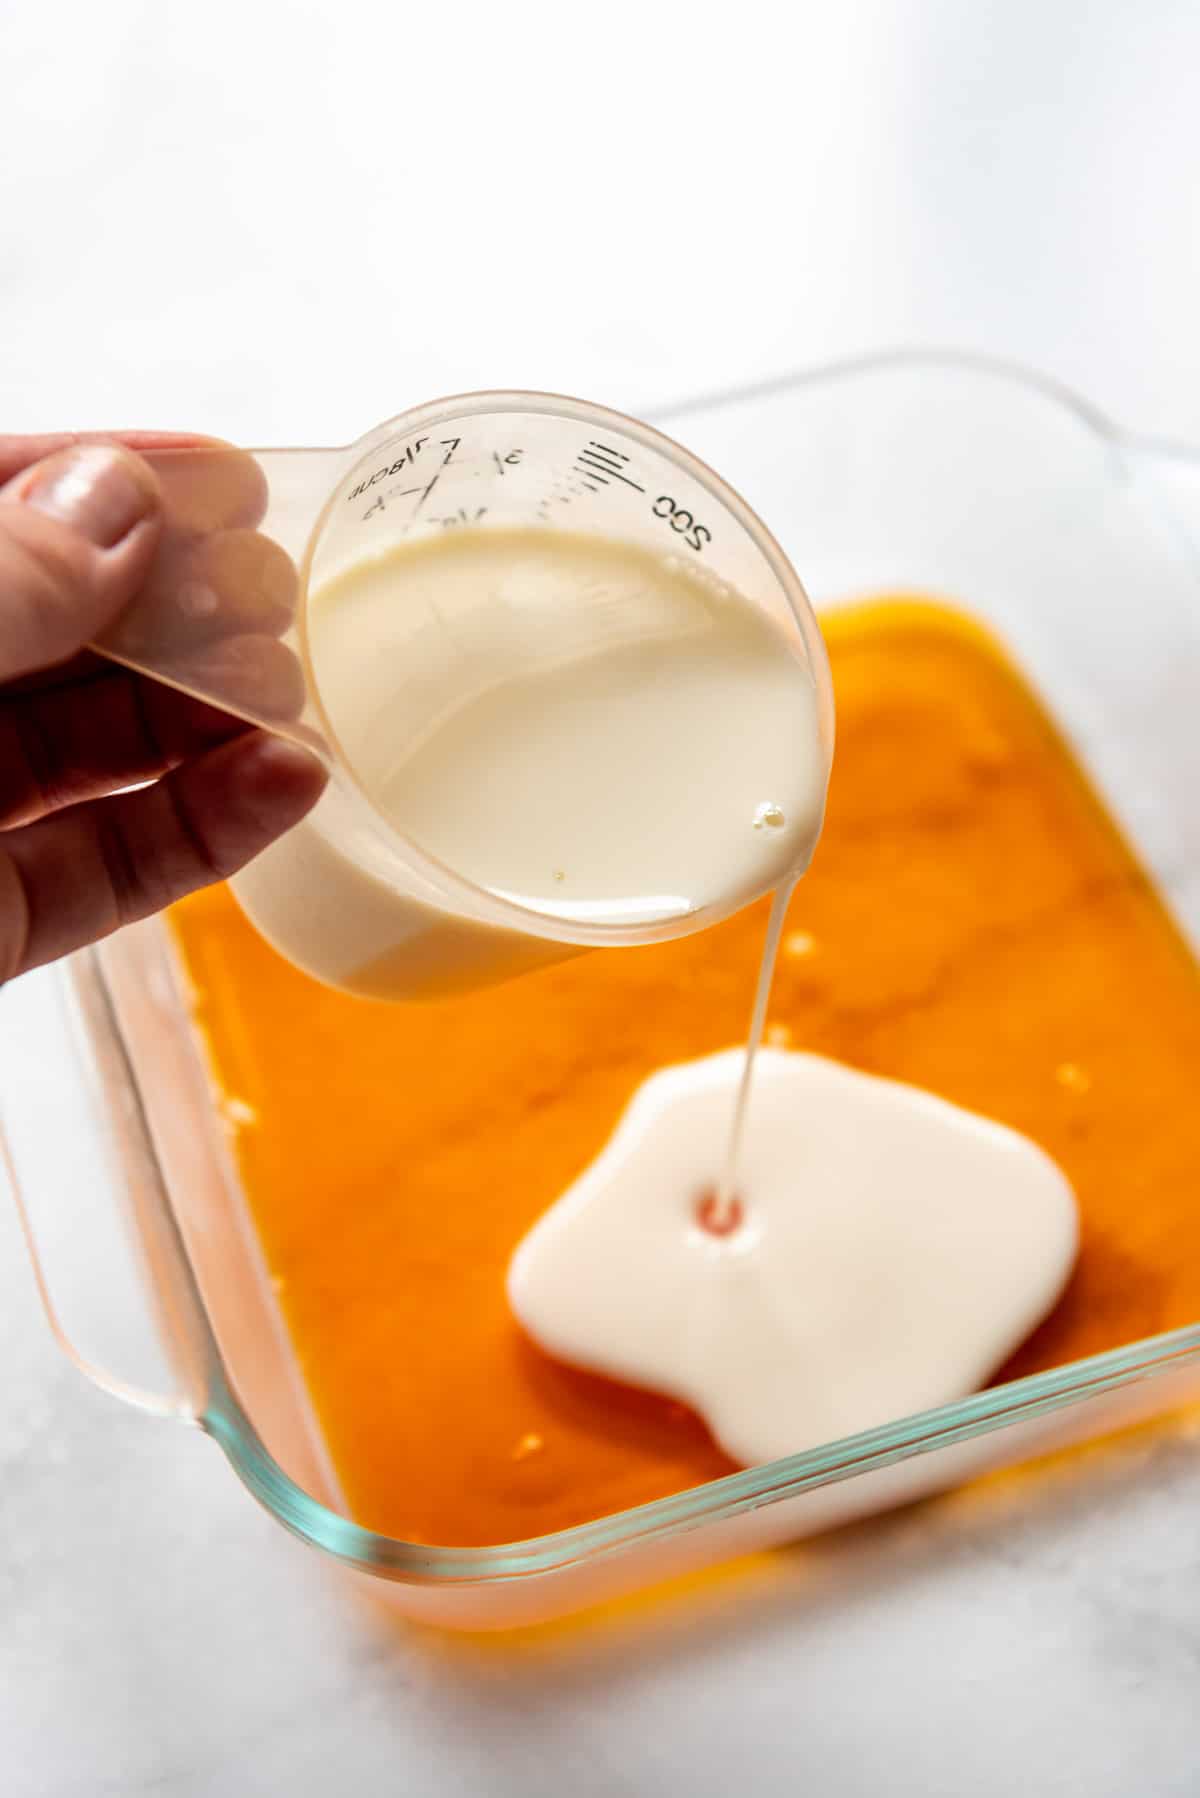 Pouring a layer of white jello liquid onto a set layer of orange jello in a glass dish.